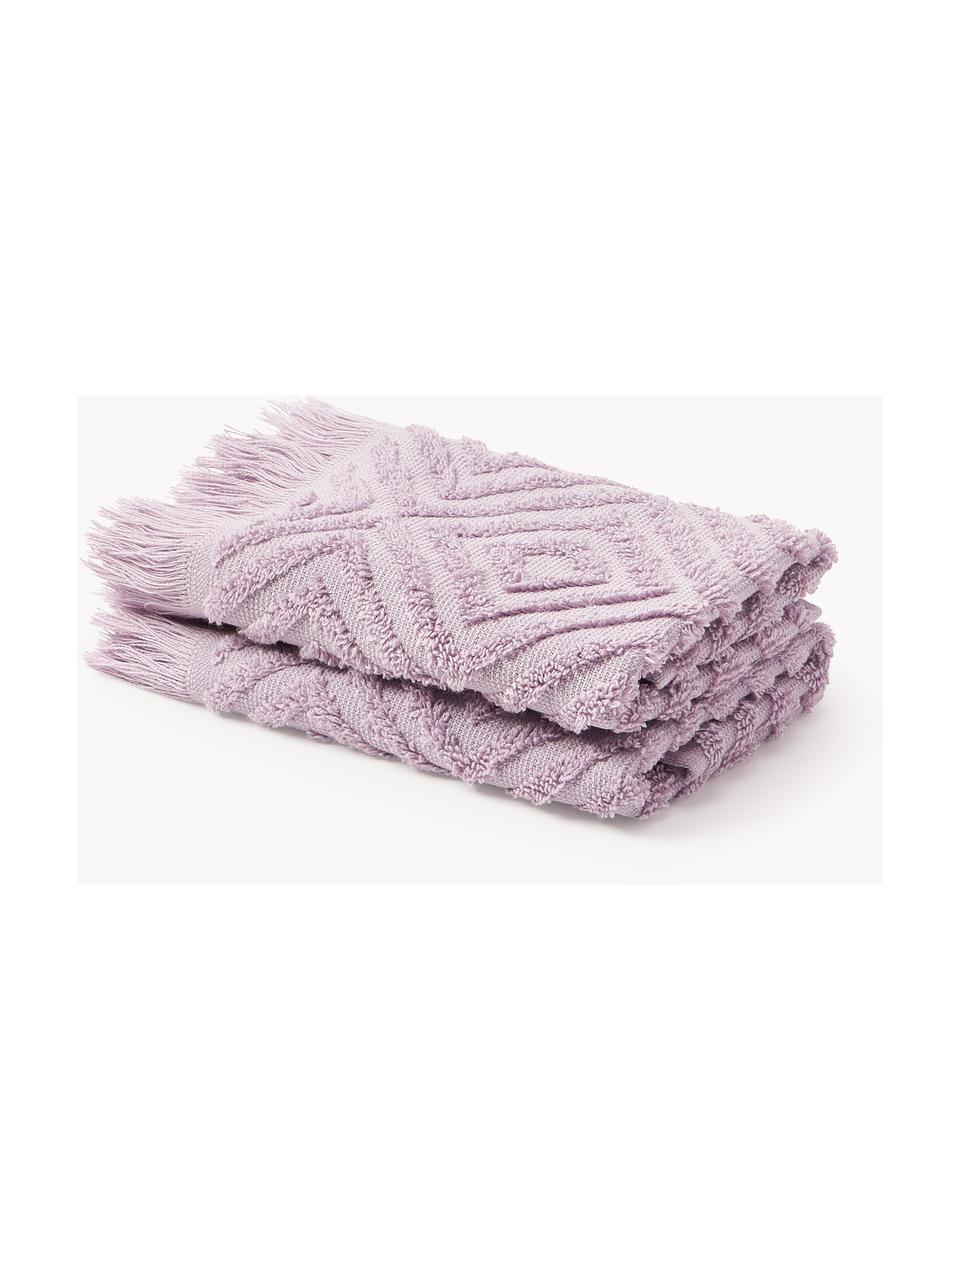 Handtuch Jacqui mit Hoch-Tief-Muster, in verschiedenen Grössen, Lavendel, Handtuch, B 50 x L 100 cm, 2 Stück